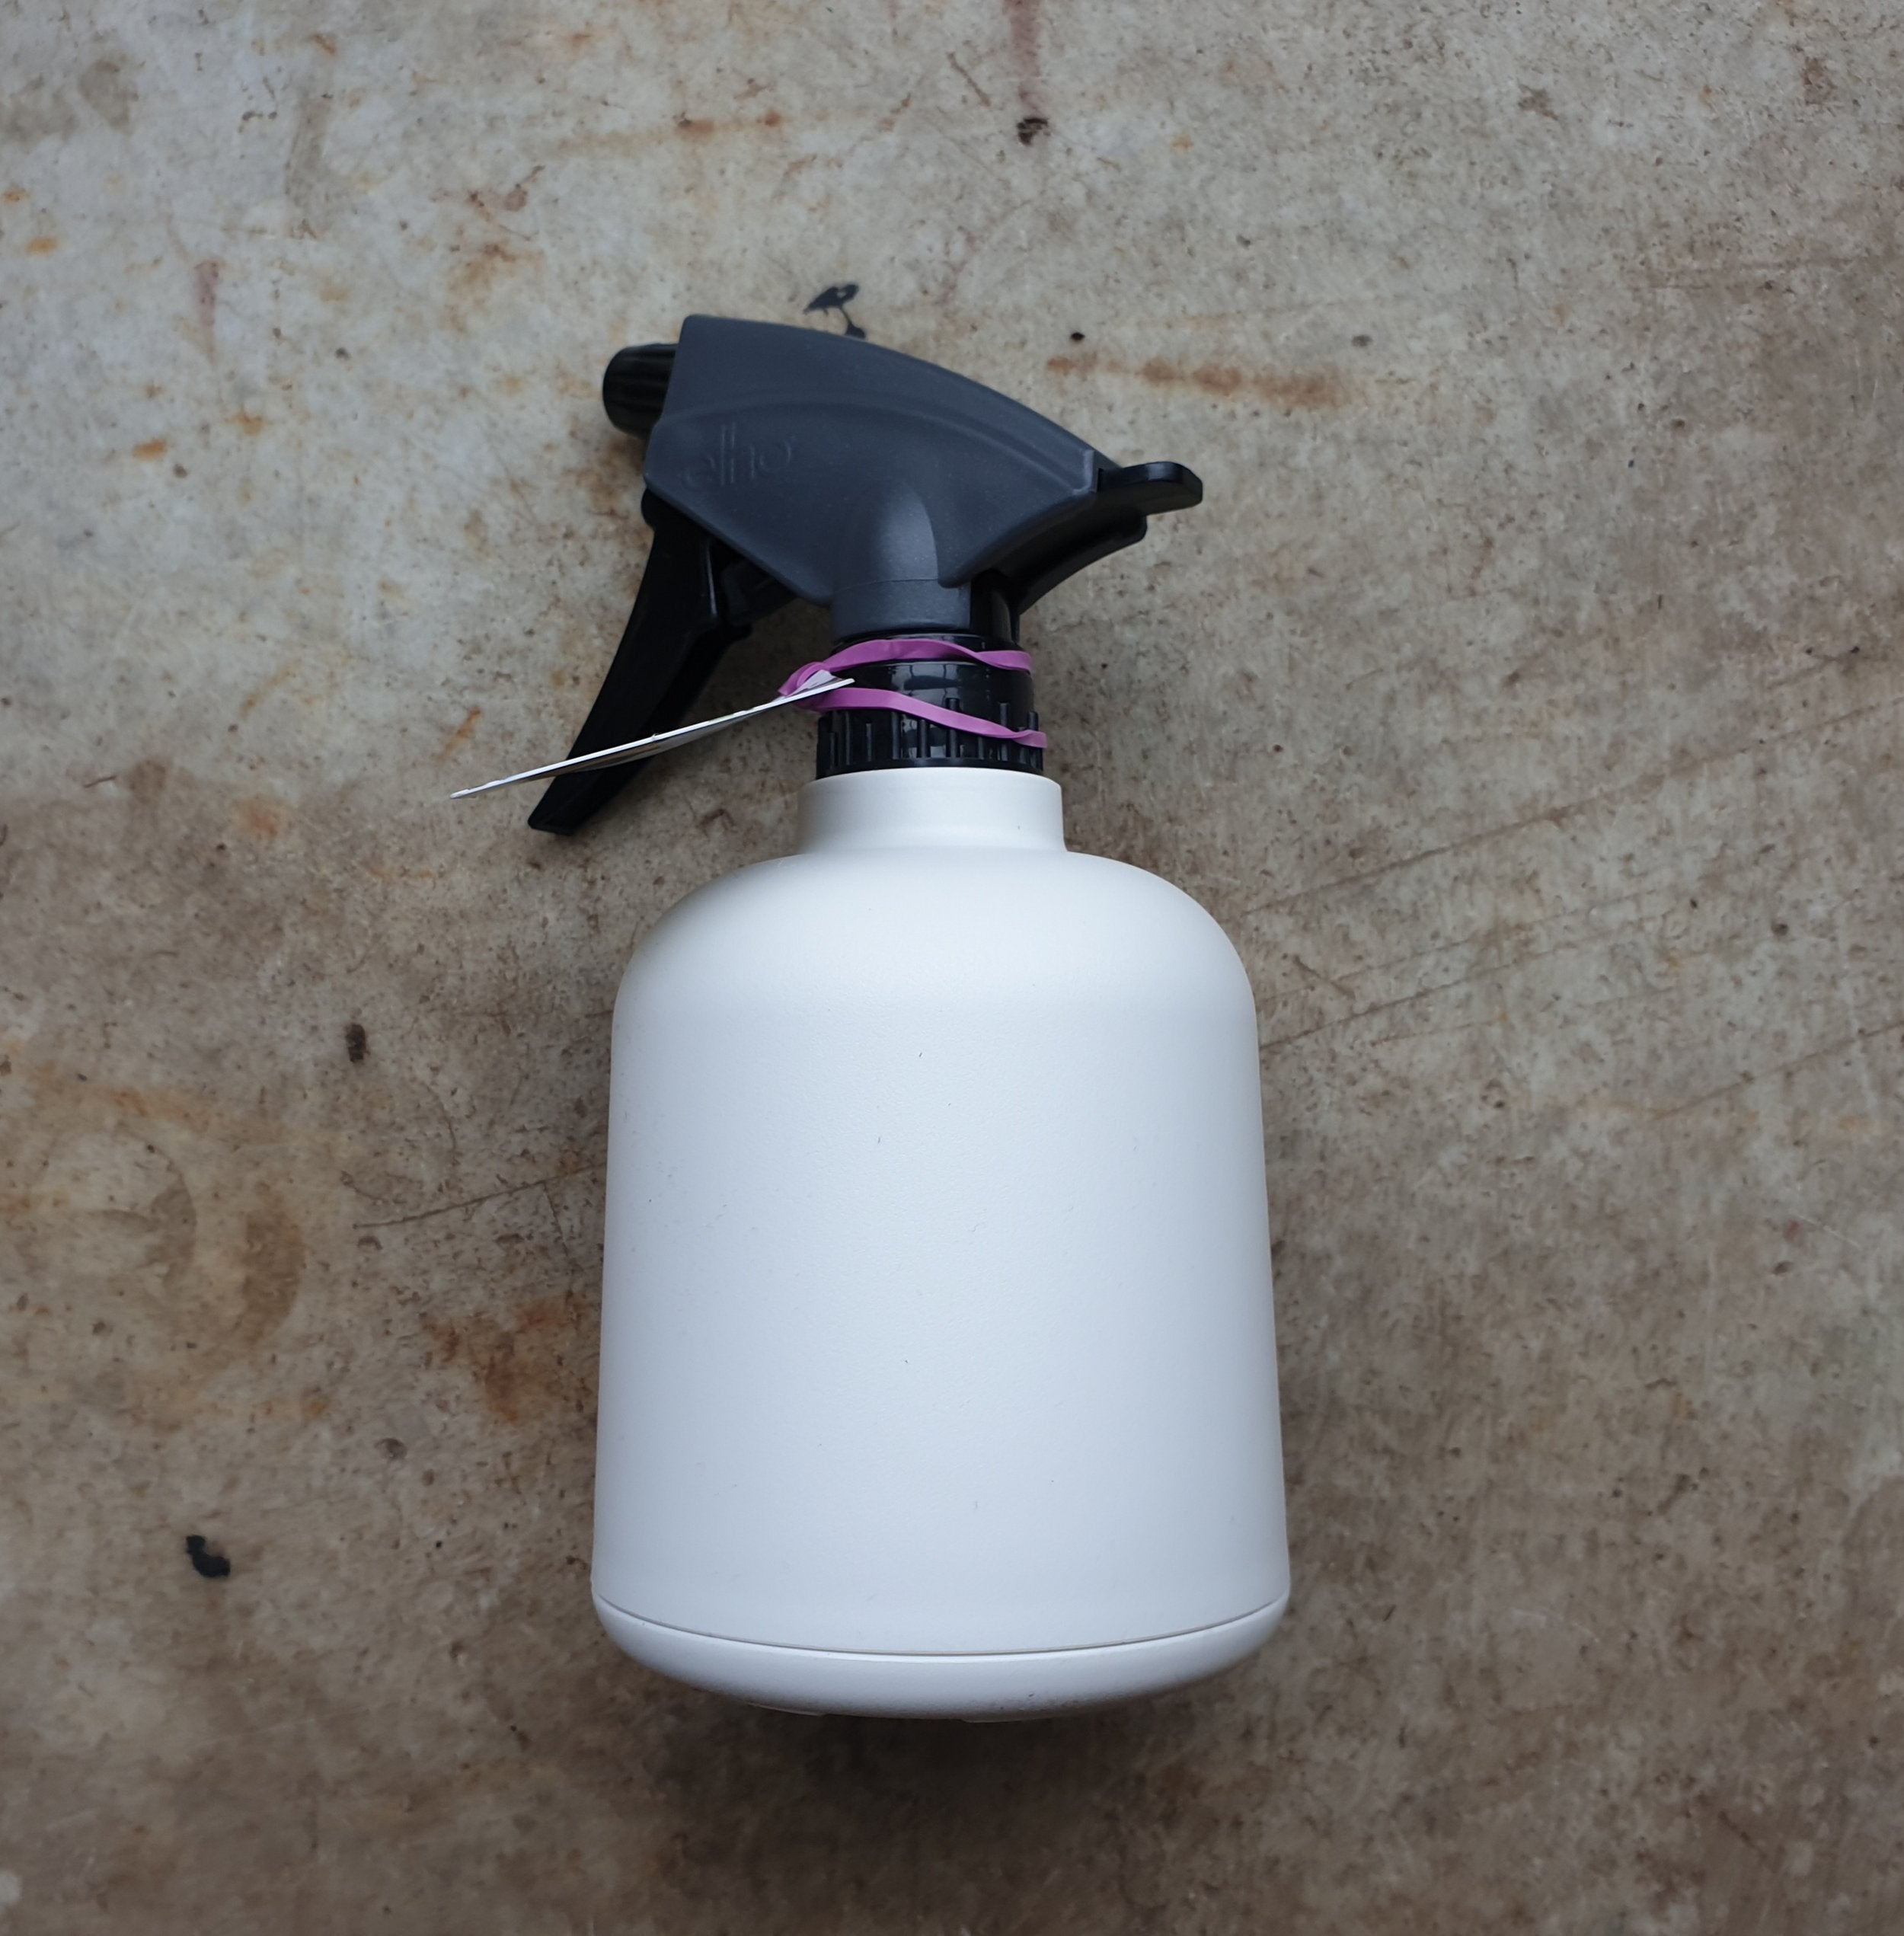 Elho soft sprayer/ mister 0.6 liter- 3 colours available